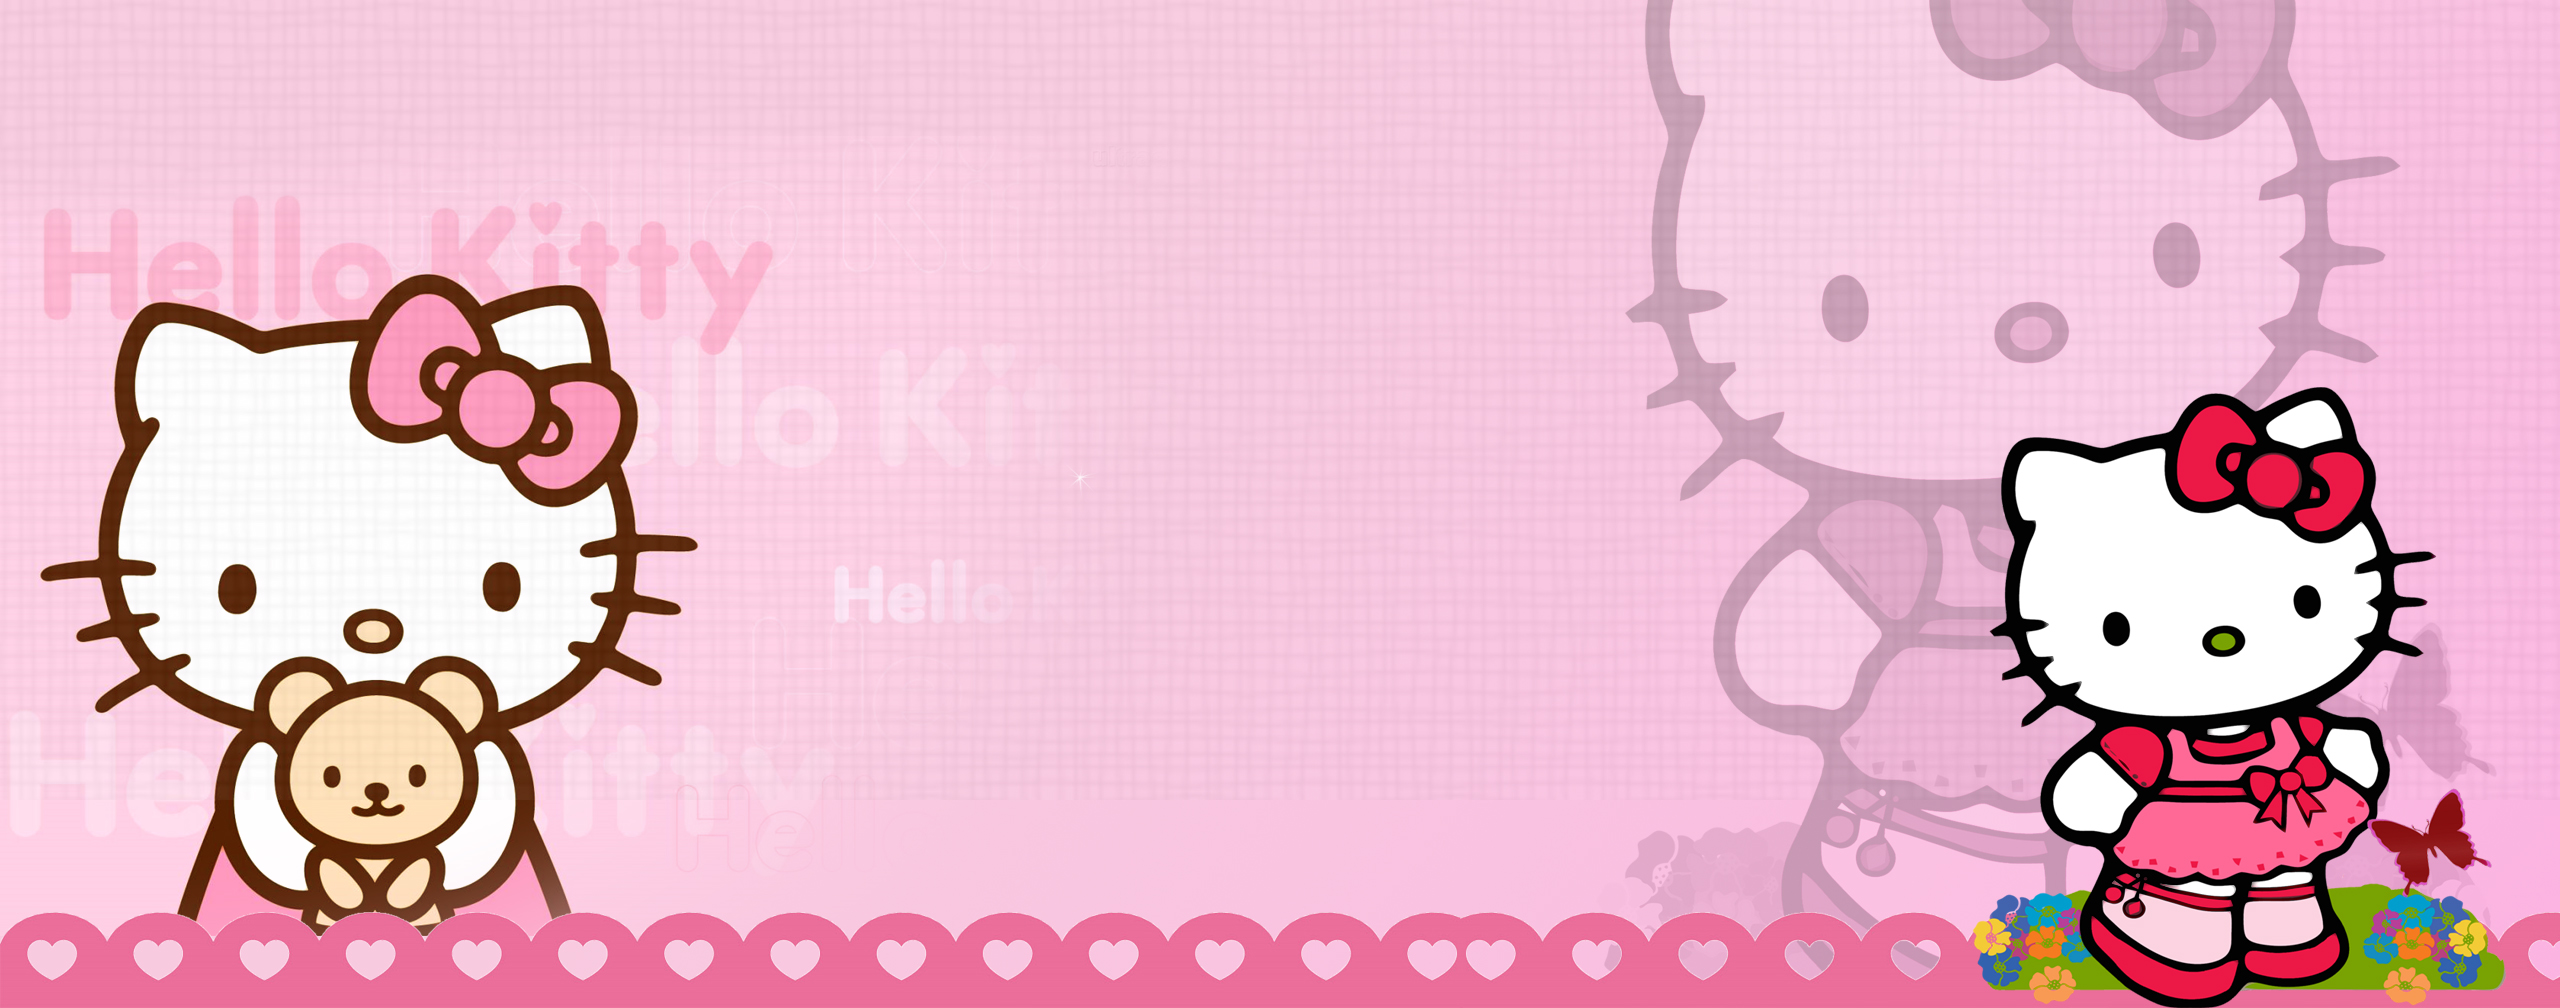 Hello Kitty Clip Art On Clipart